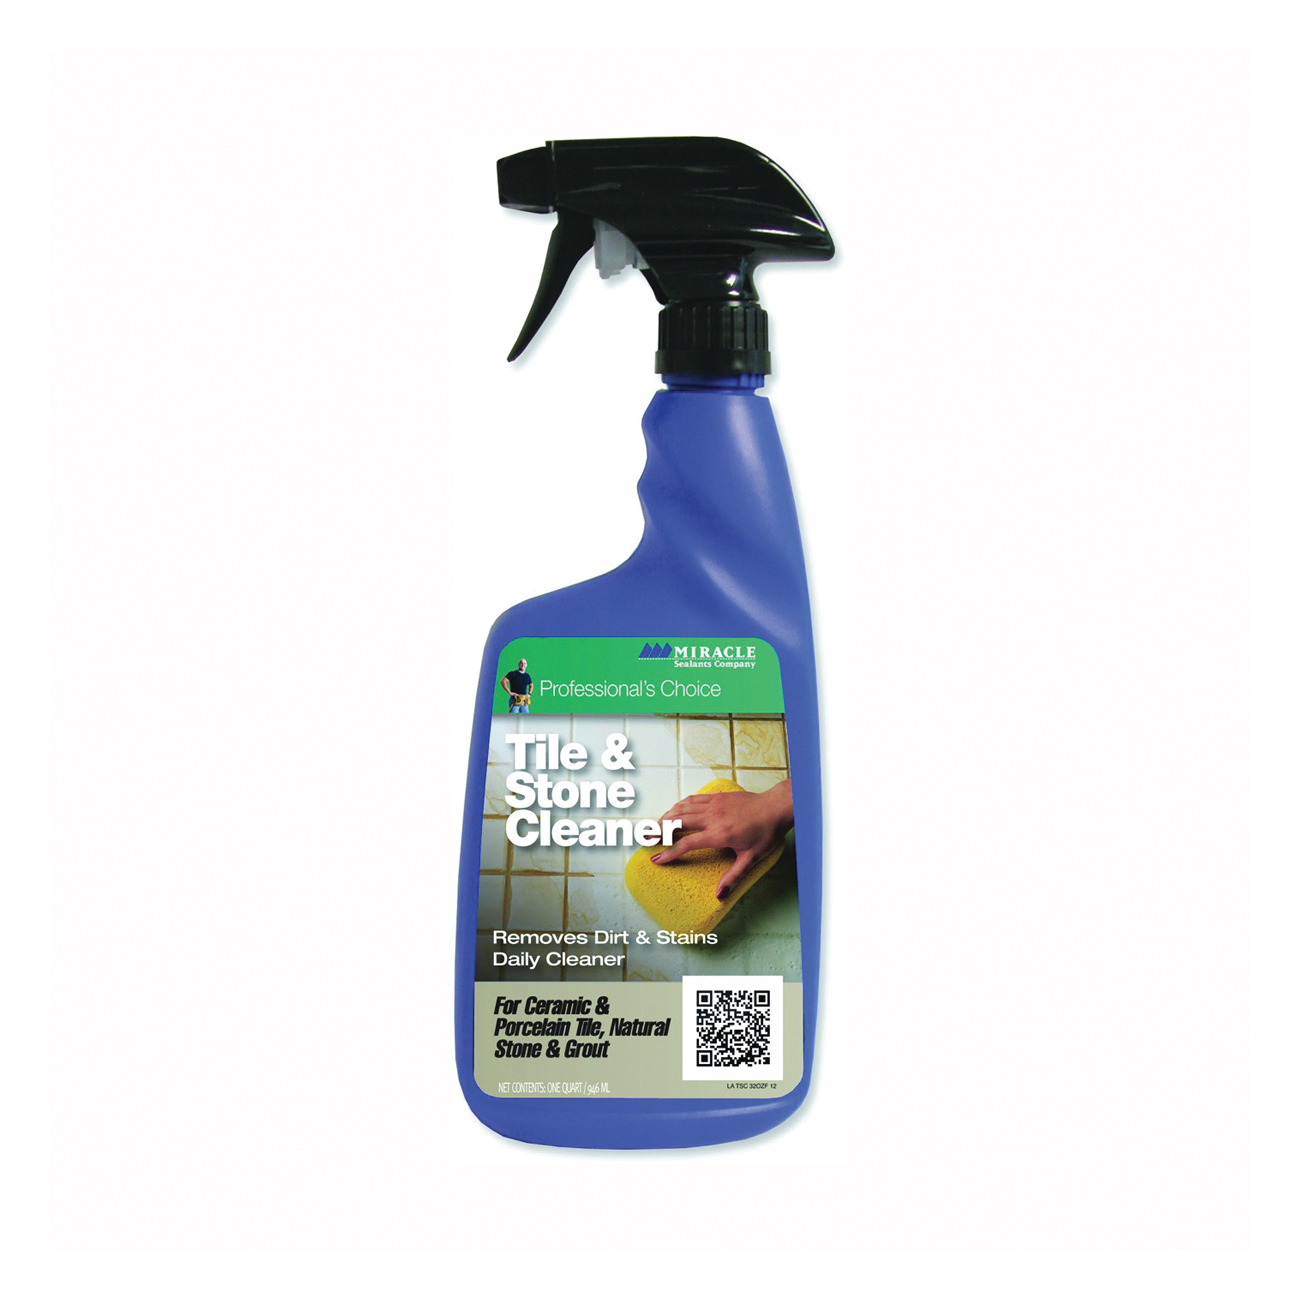 Odyn 4 oz. Grout Sealer Applicator Brush Bottle